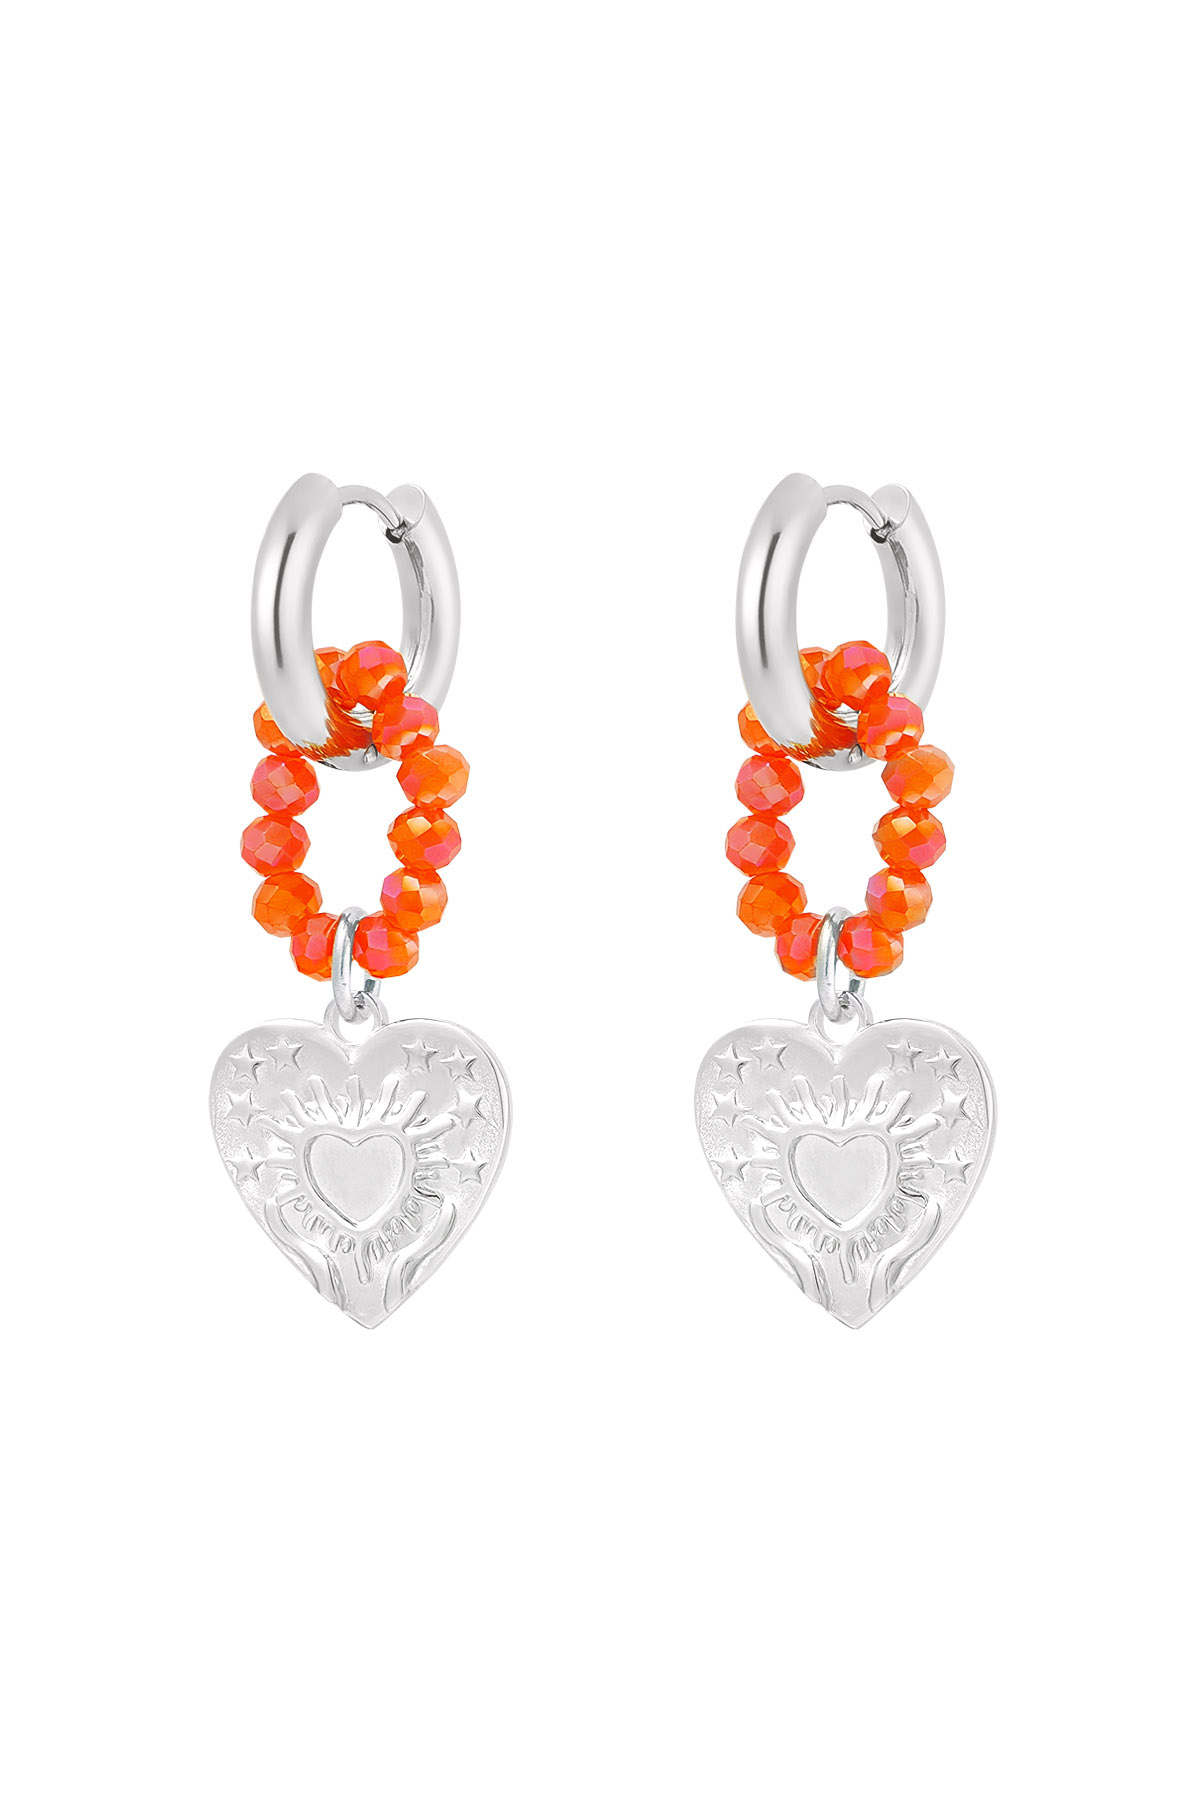 Ohrring Herzen und Perlen orange - silber h5 